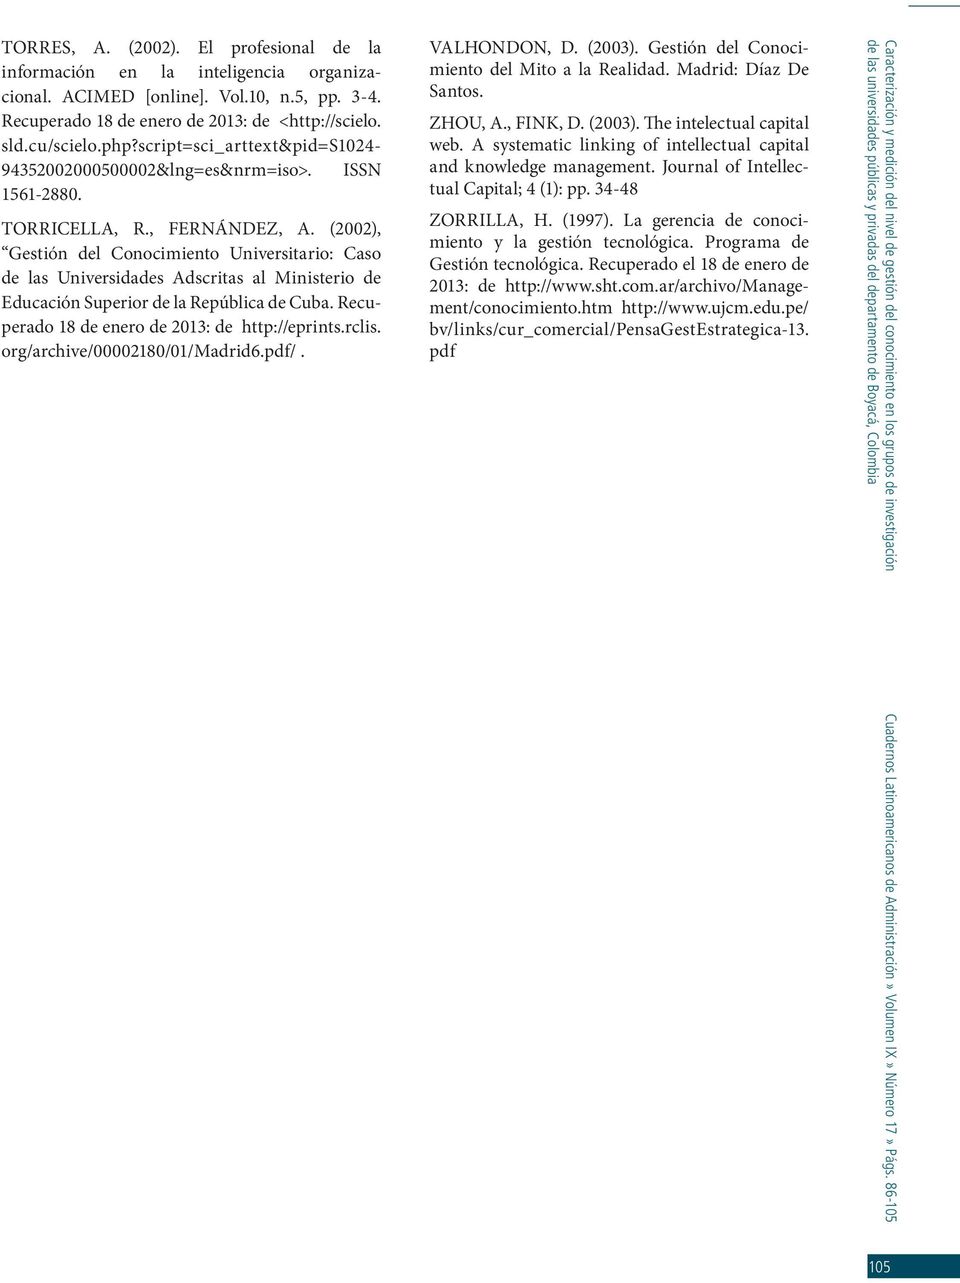 (2002), Gestión del Conocimiento Universitario: Caso de las Universidades Adscritas al Ministerio de Educación Superior de la República de Cuba. Recuperado 18 de enero de 2013: de http://eprints.